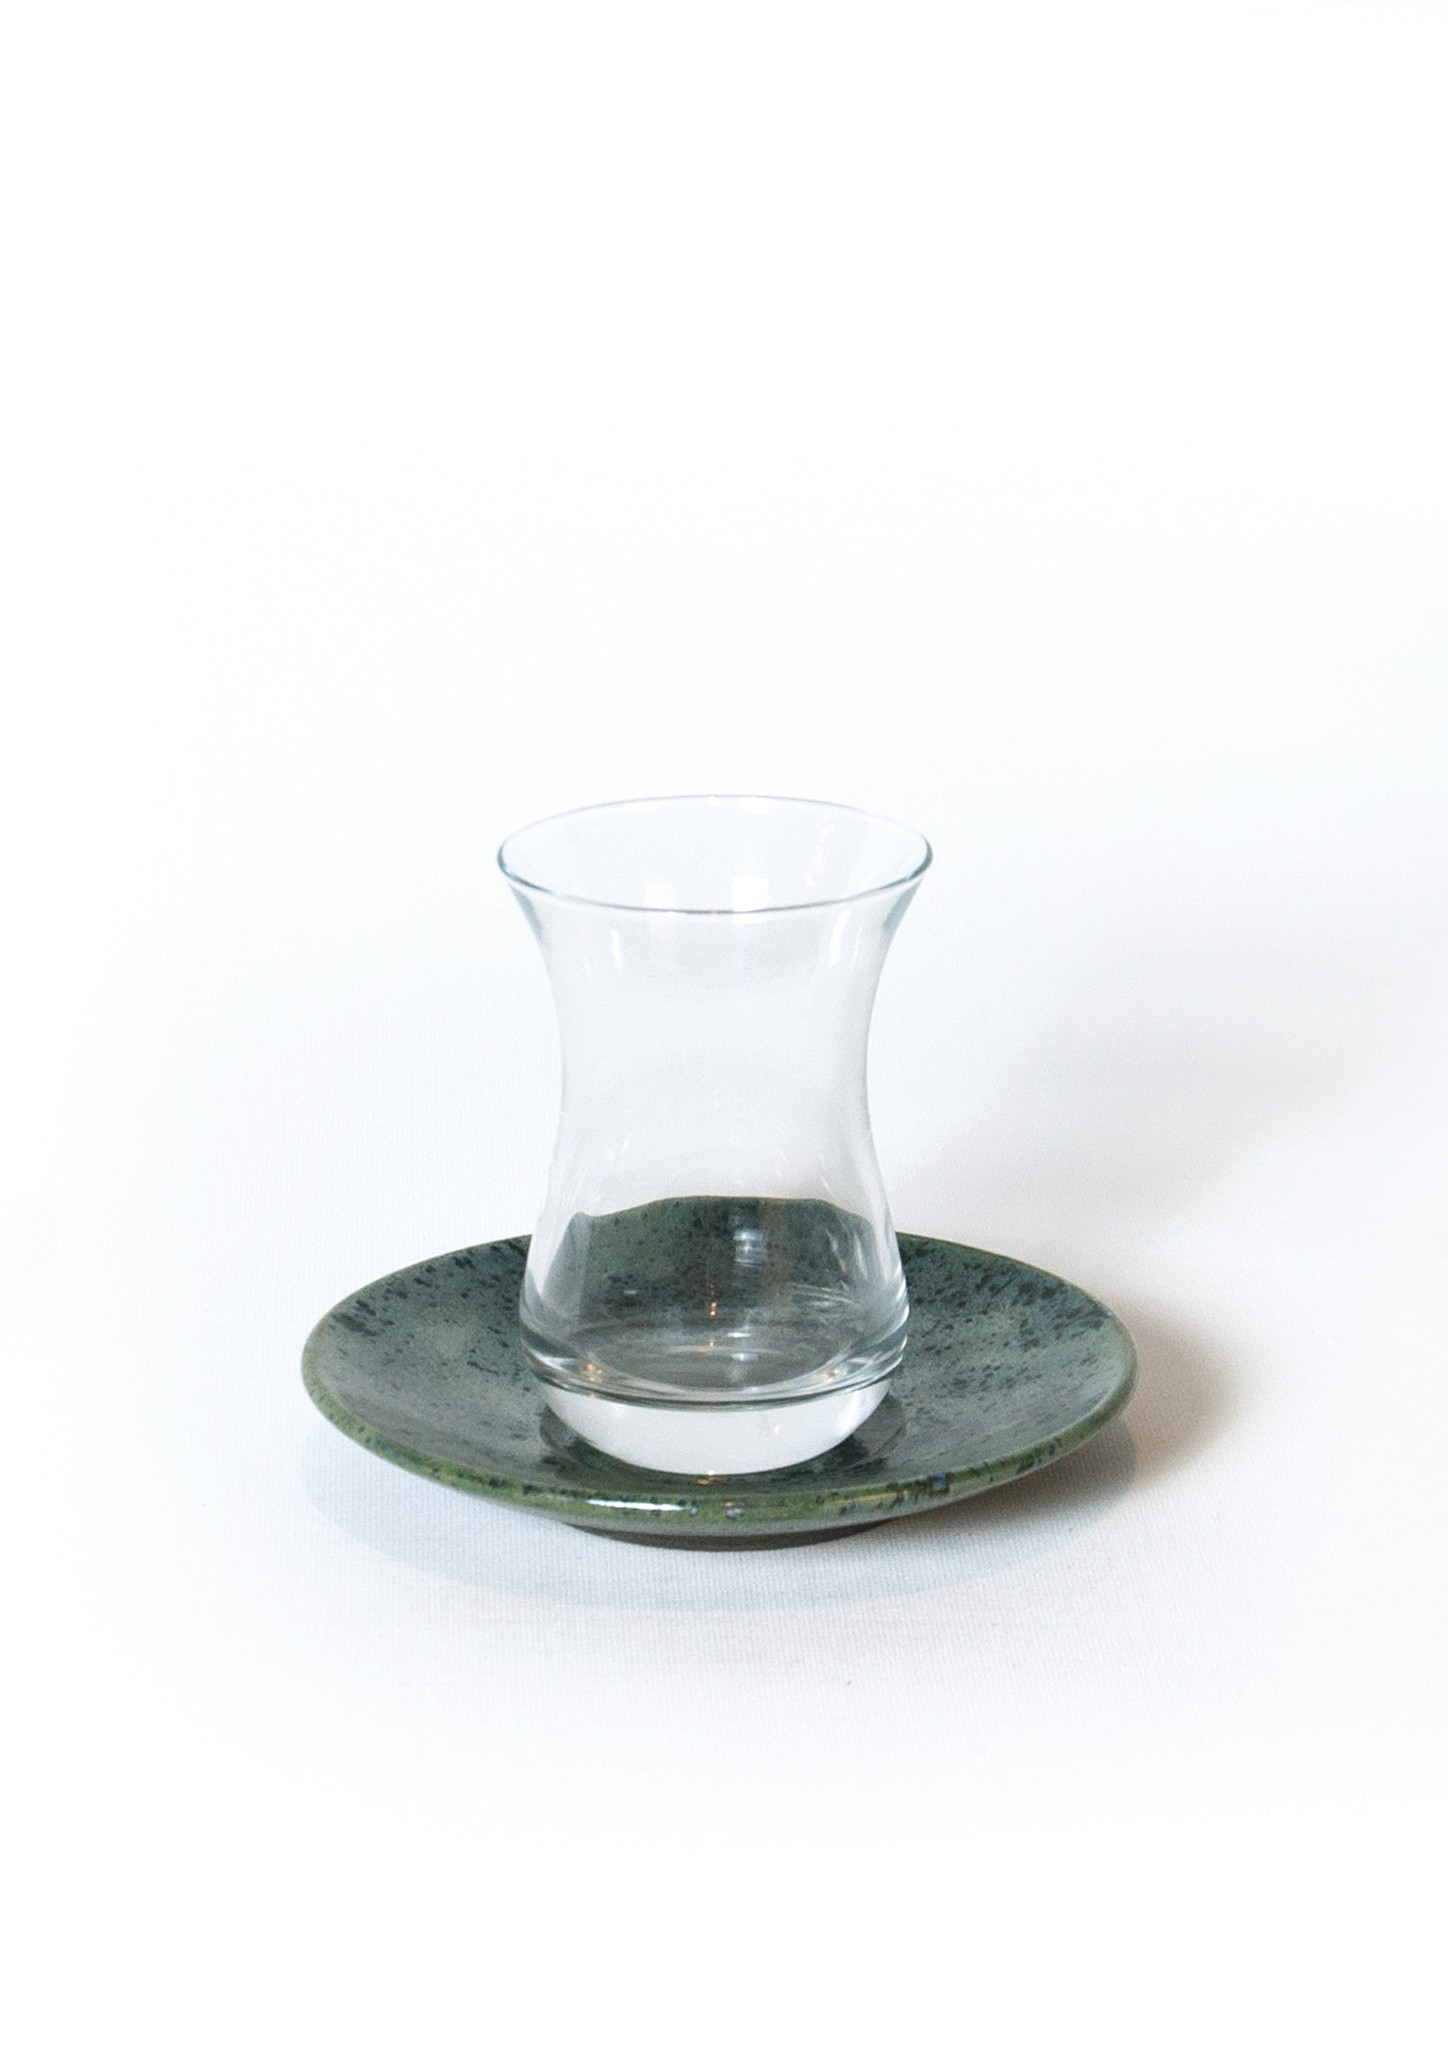 Special Glaze Ceramic Tea Cup and Saucer